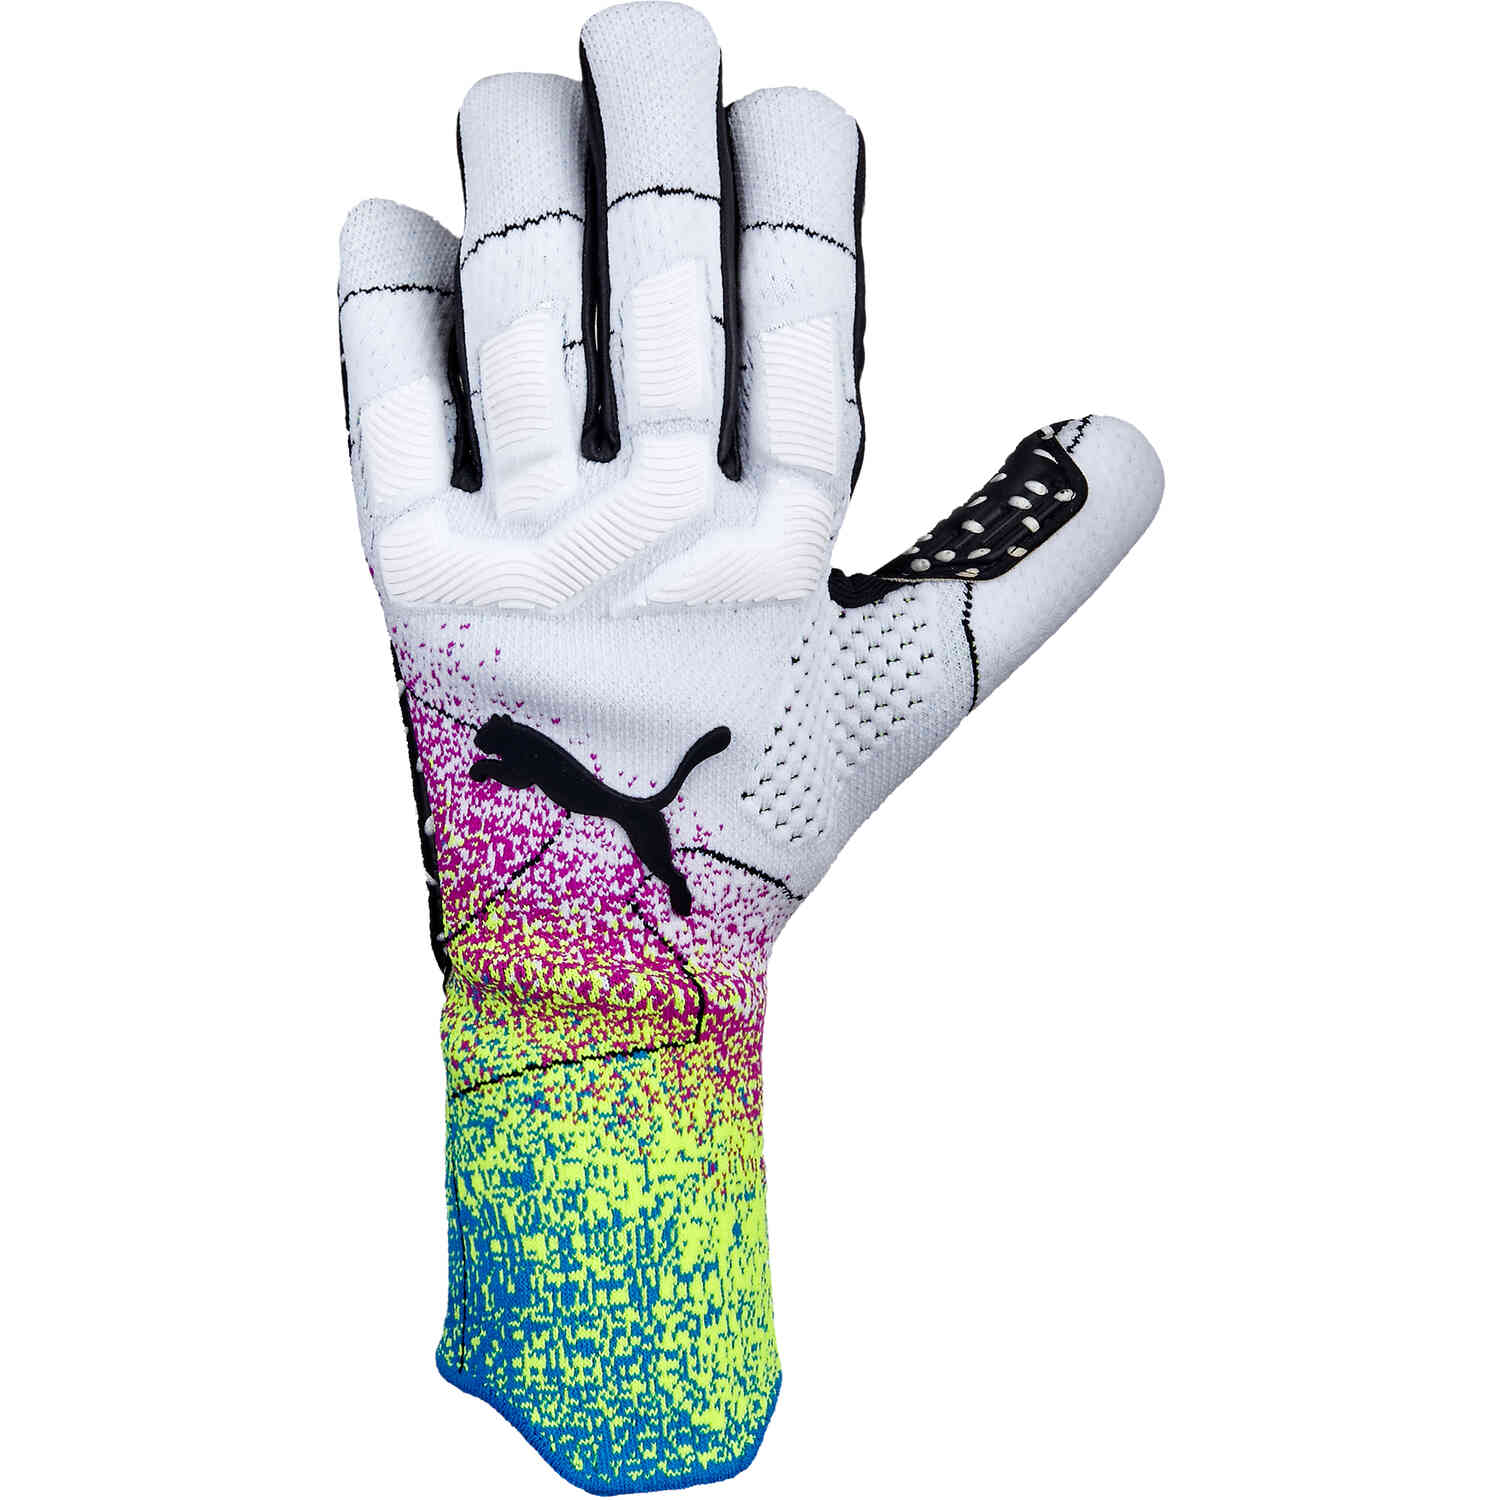 PUMA FUTURE Z Grip 1 Negative Cut Goalkeeper Gloves - White & Black ...